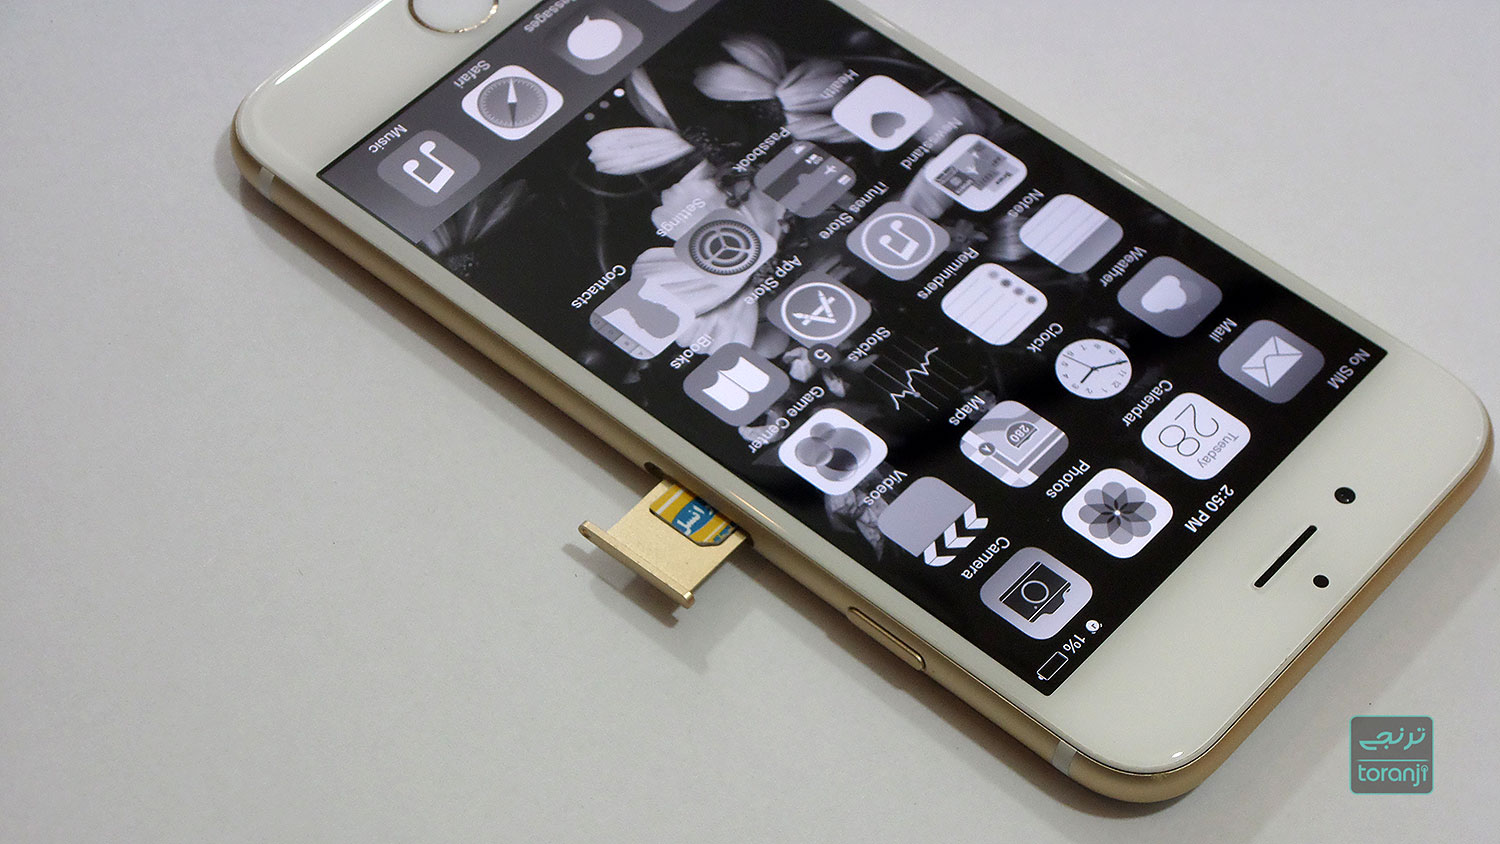 بیانیه رسمی اپل درباره کند شدن آیفون های قدیمی: ارایه آپدیت جدید iOS و کاهش قیمت تعویض باتری آن ها